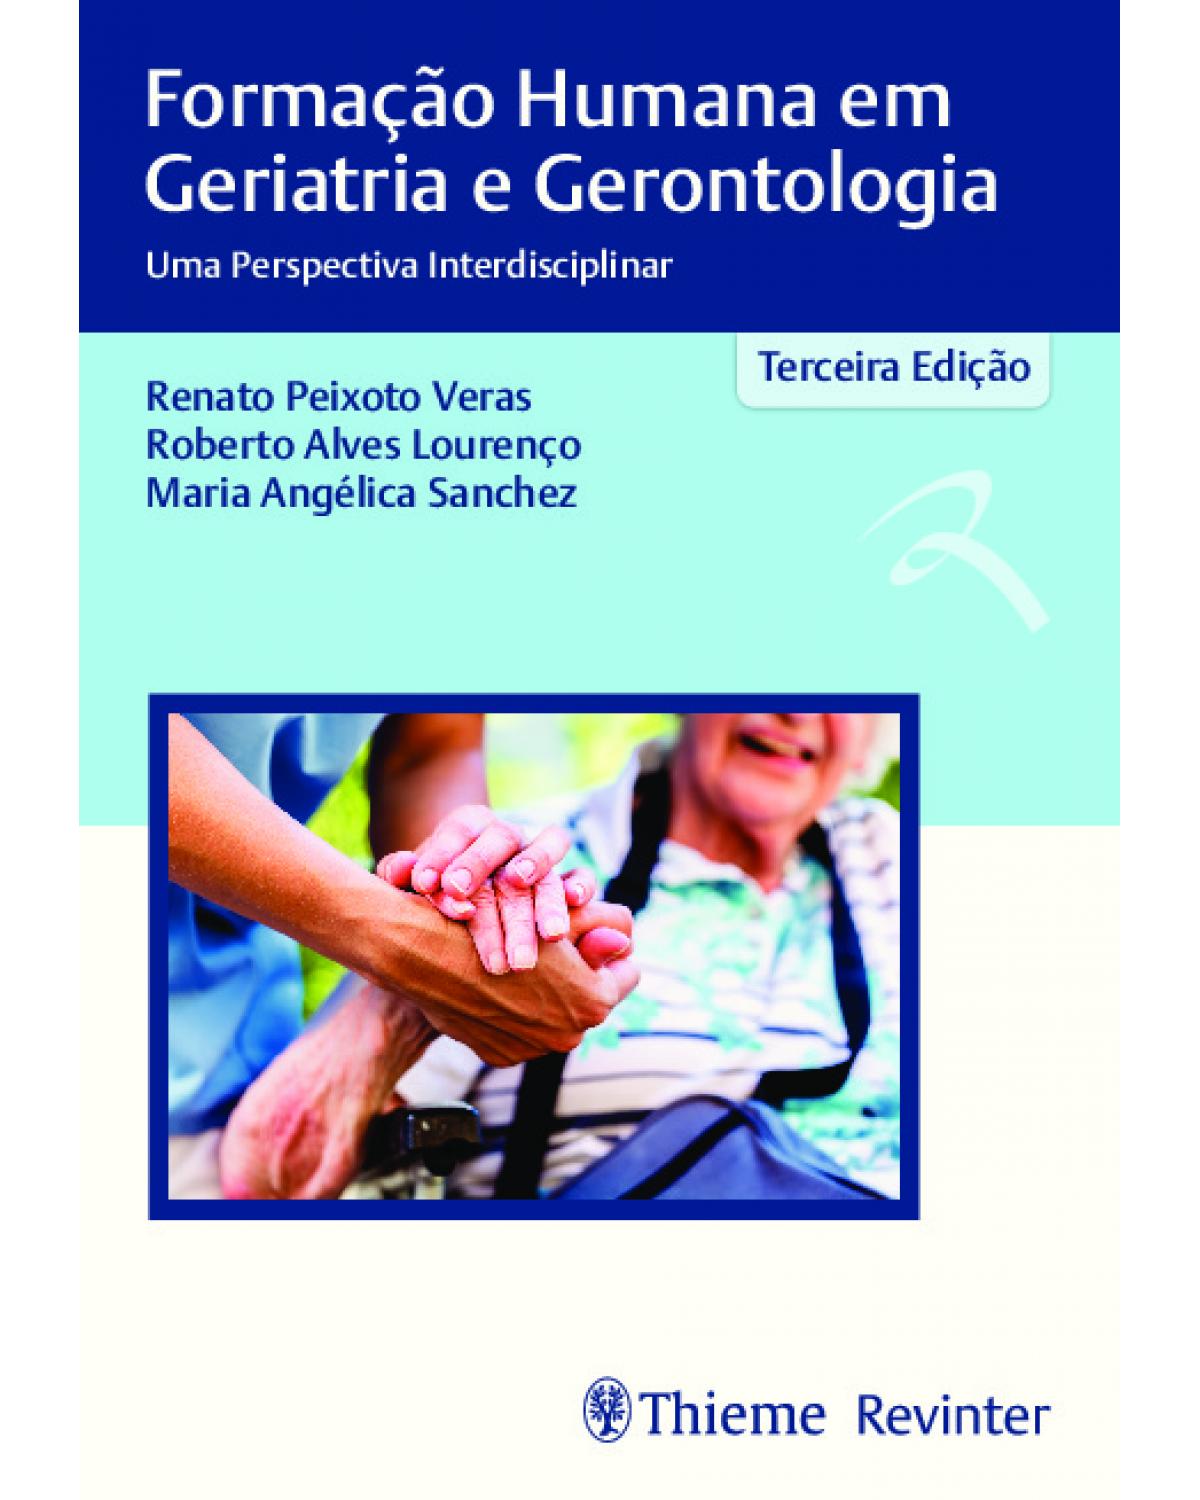 Formação humana em geriatria e gerontologia - 3ª Edição